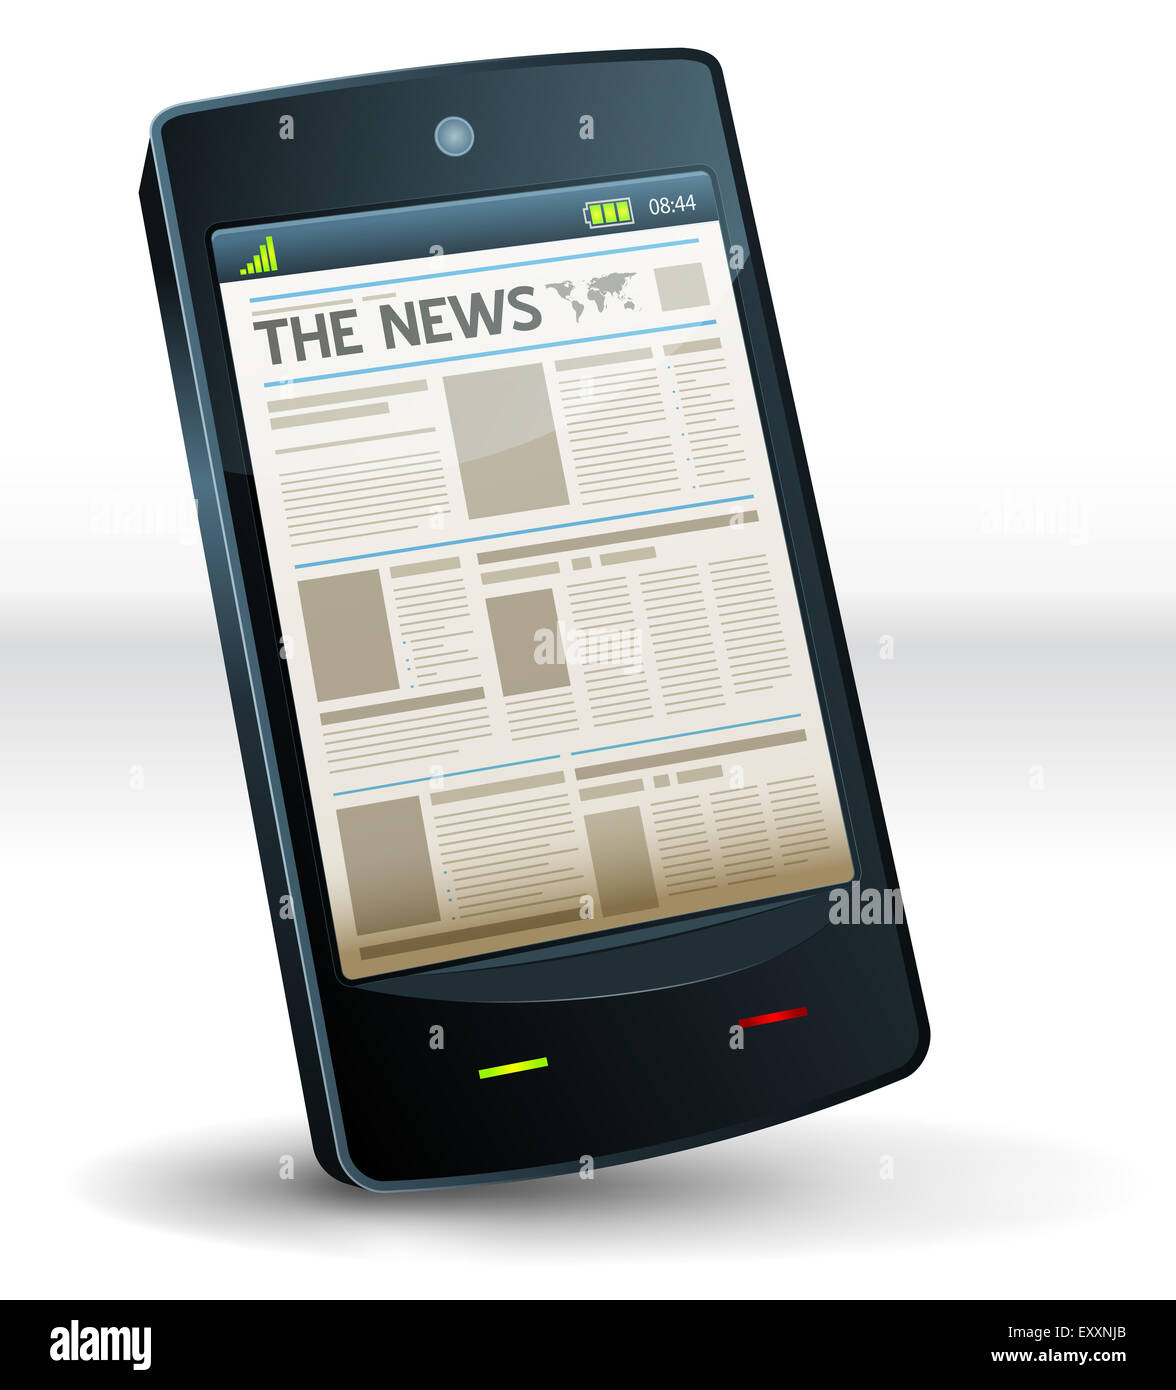 Beispiel für eine Zeitung Veröffentlichung Bildschirm auf eine Handytasche Smartphone Computergerät Stockfoto